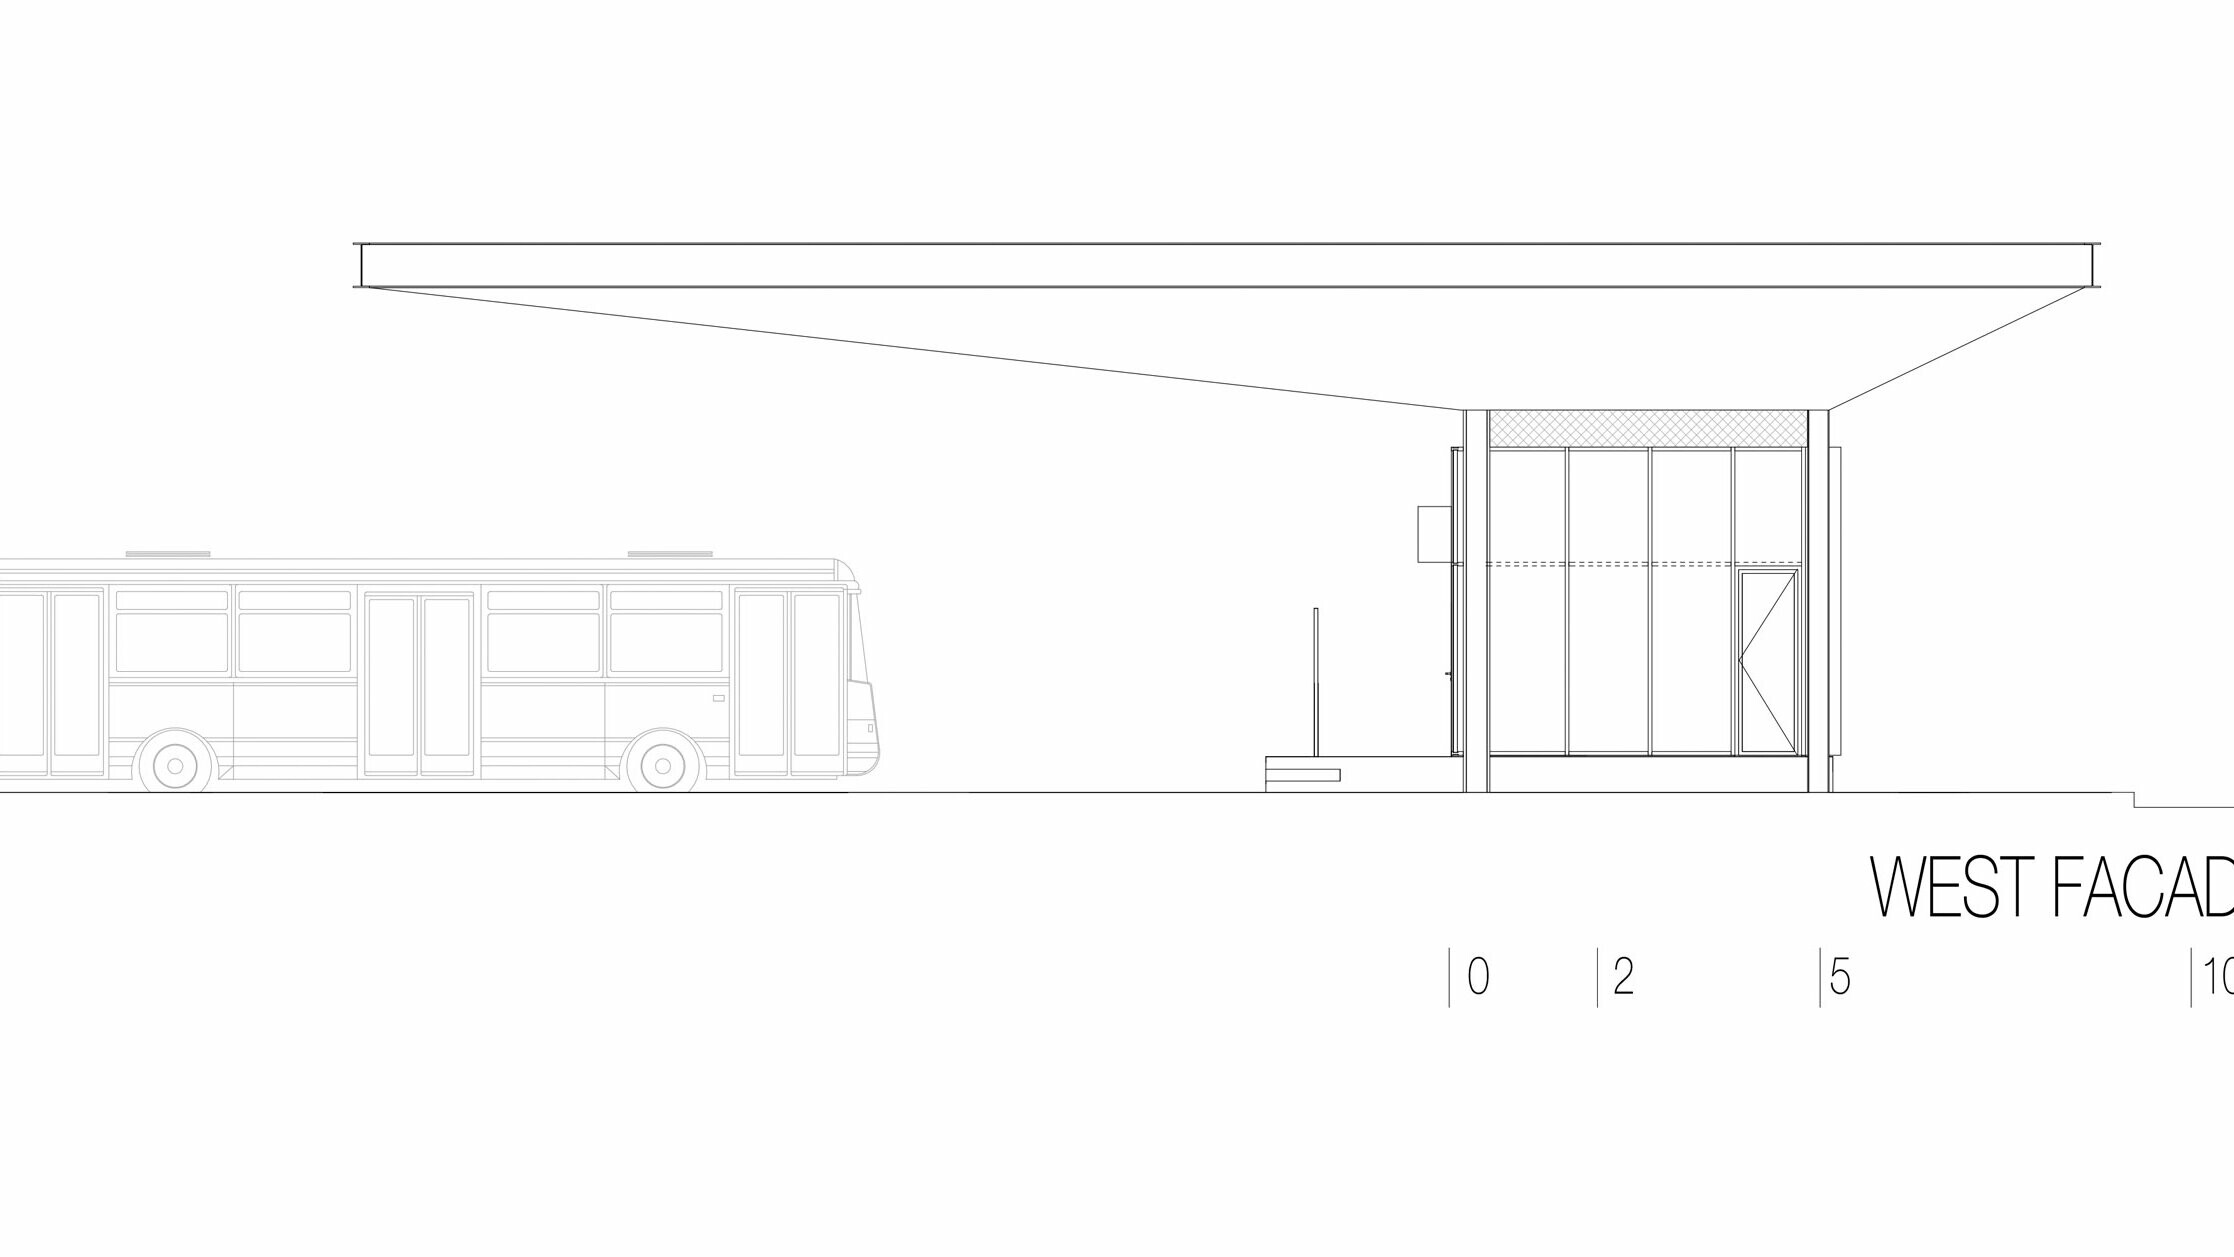 Cette esquisse montre la vue ouest de du hall de la gare routière « Autobusni Kolodvor Slavonski Brod » en Croatie. L'illustration met en évidence le long toit Prefalz blanc horizontal de PREFA, en surplomb. À droite de l'esquisse, se trouve un bâtiment rectangulaire aux grandes surfaces vitrées et aux lignes épurées. À gauche, un bus, donne les proportions du hall de gare à l'échelle d'un véhicule. La vue ouest met en évidence l'architecture moderne et fonctionnelle du hall de gare, auquel la combinaison verre et aluminium confère une atmosphère lumineuse et accueillante.